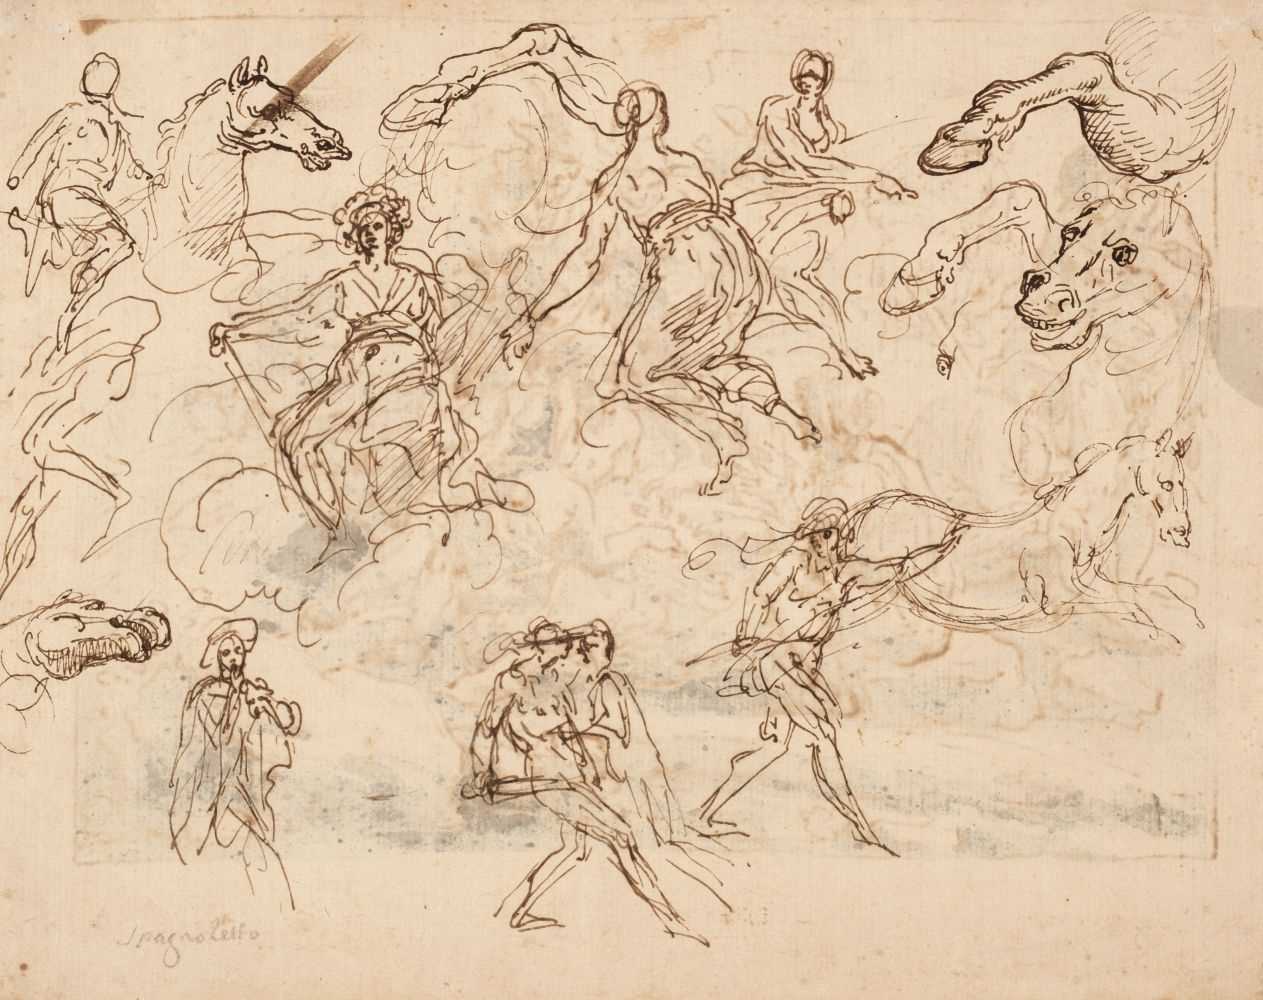 Lot 238 - Jusepe de Ribera, (1591-1652). Studies of Figures and Horses, pen and brown ink